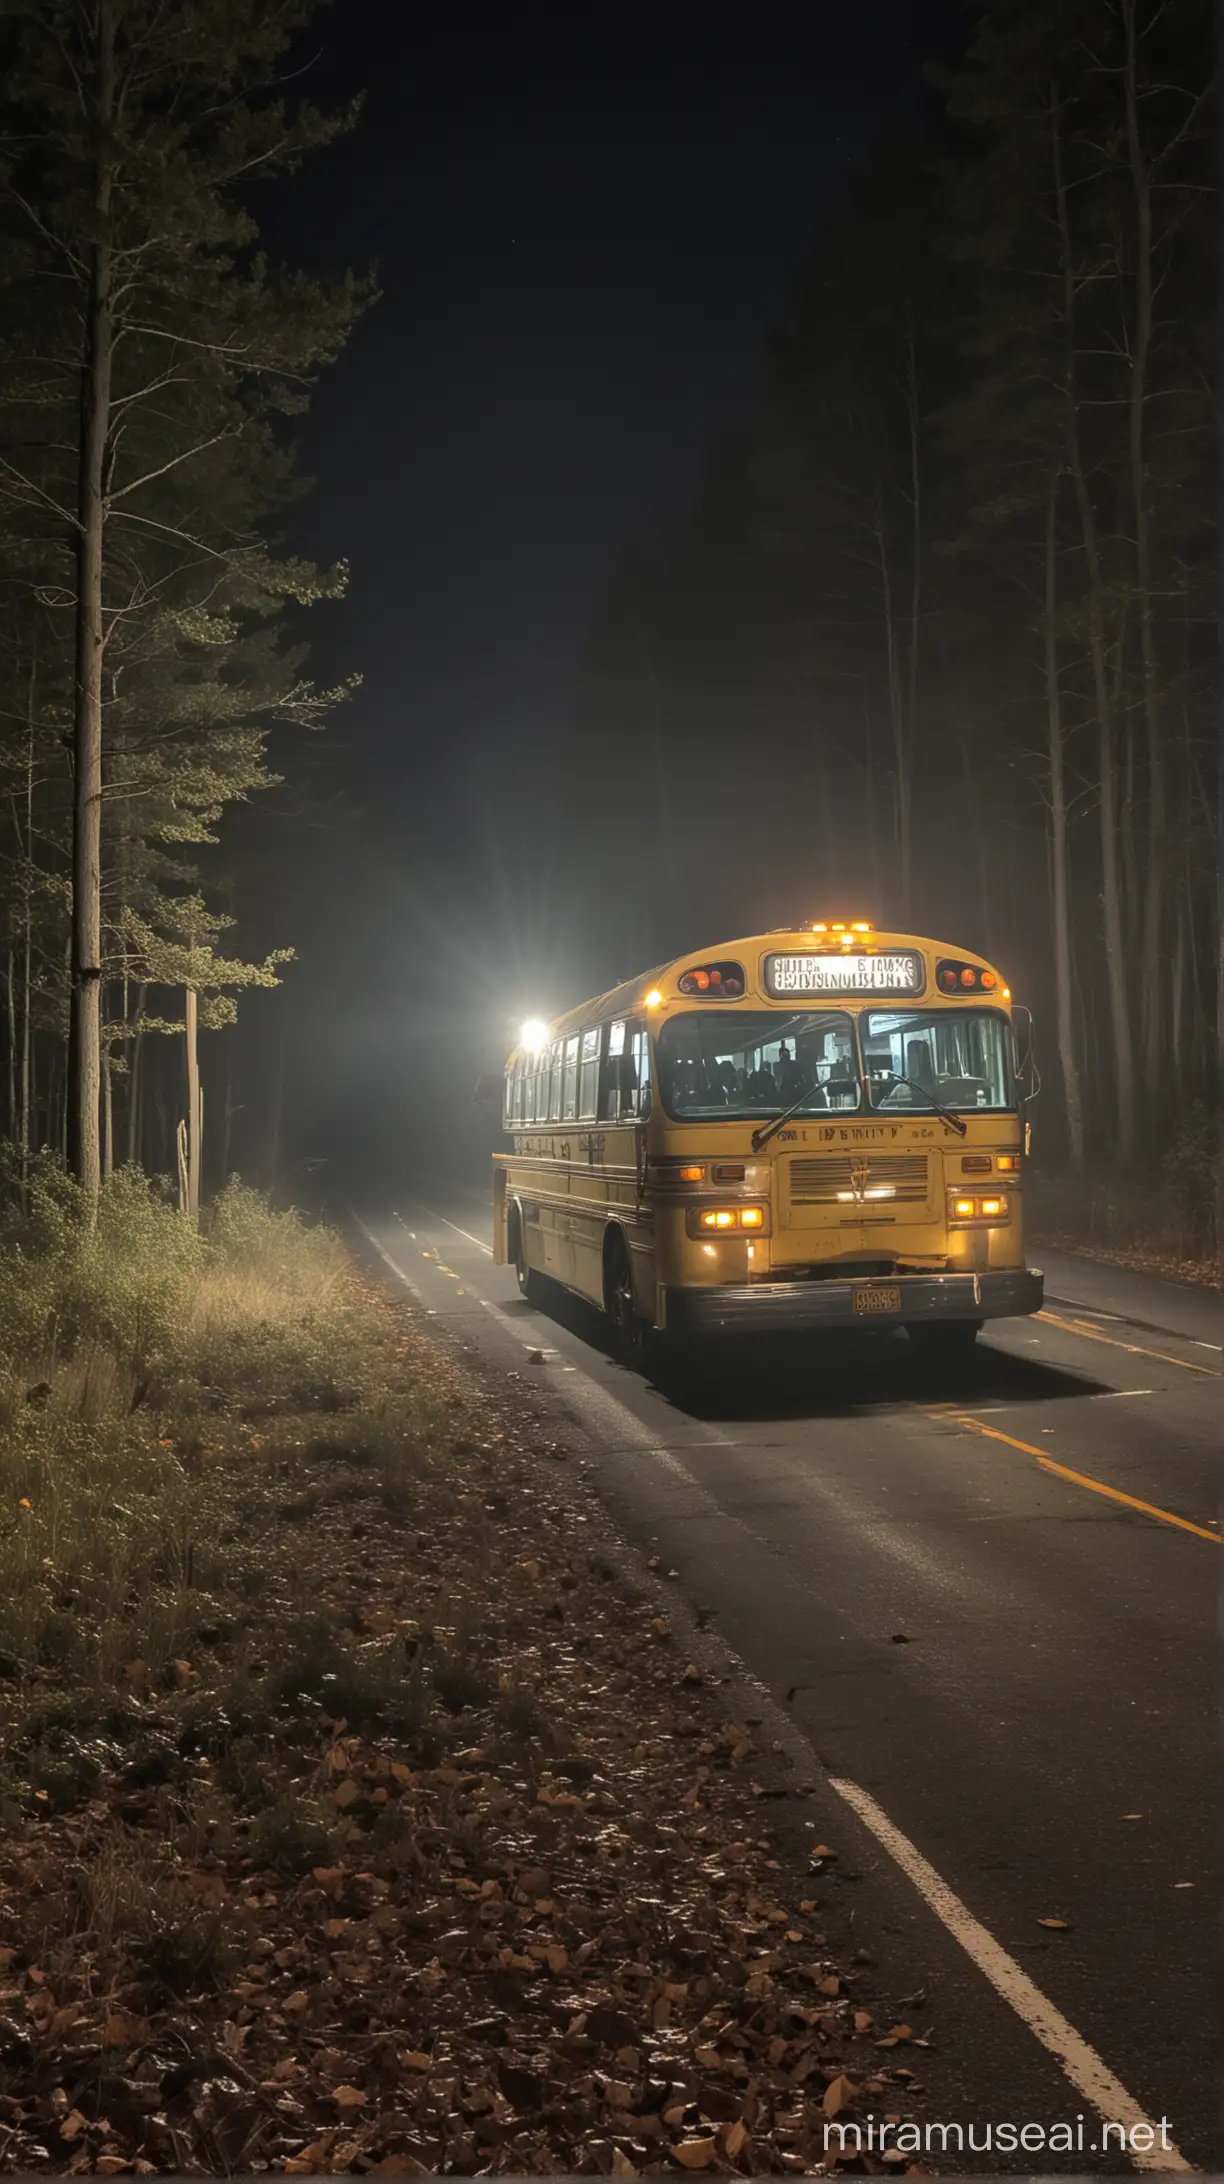 bus pemudik mogok dijalan raya dekat hutan yang menyeramkan ketika malam hari suasana mencekam.